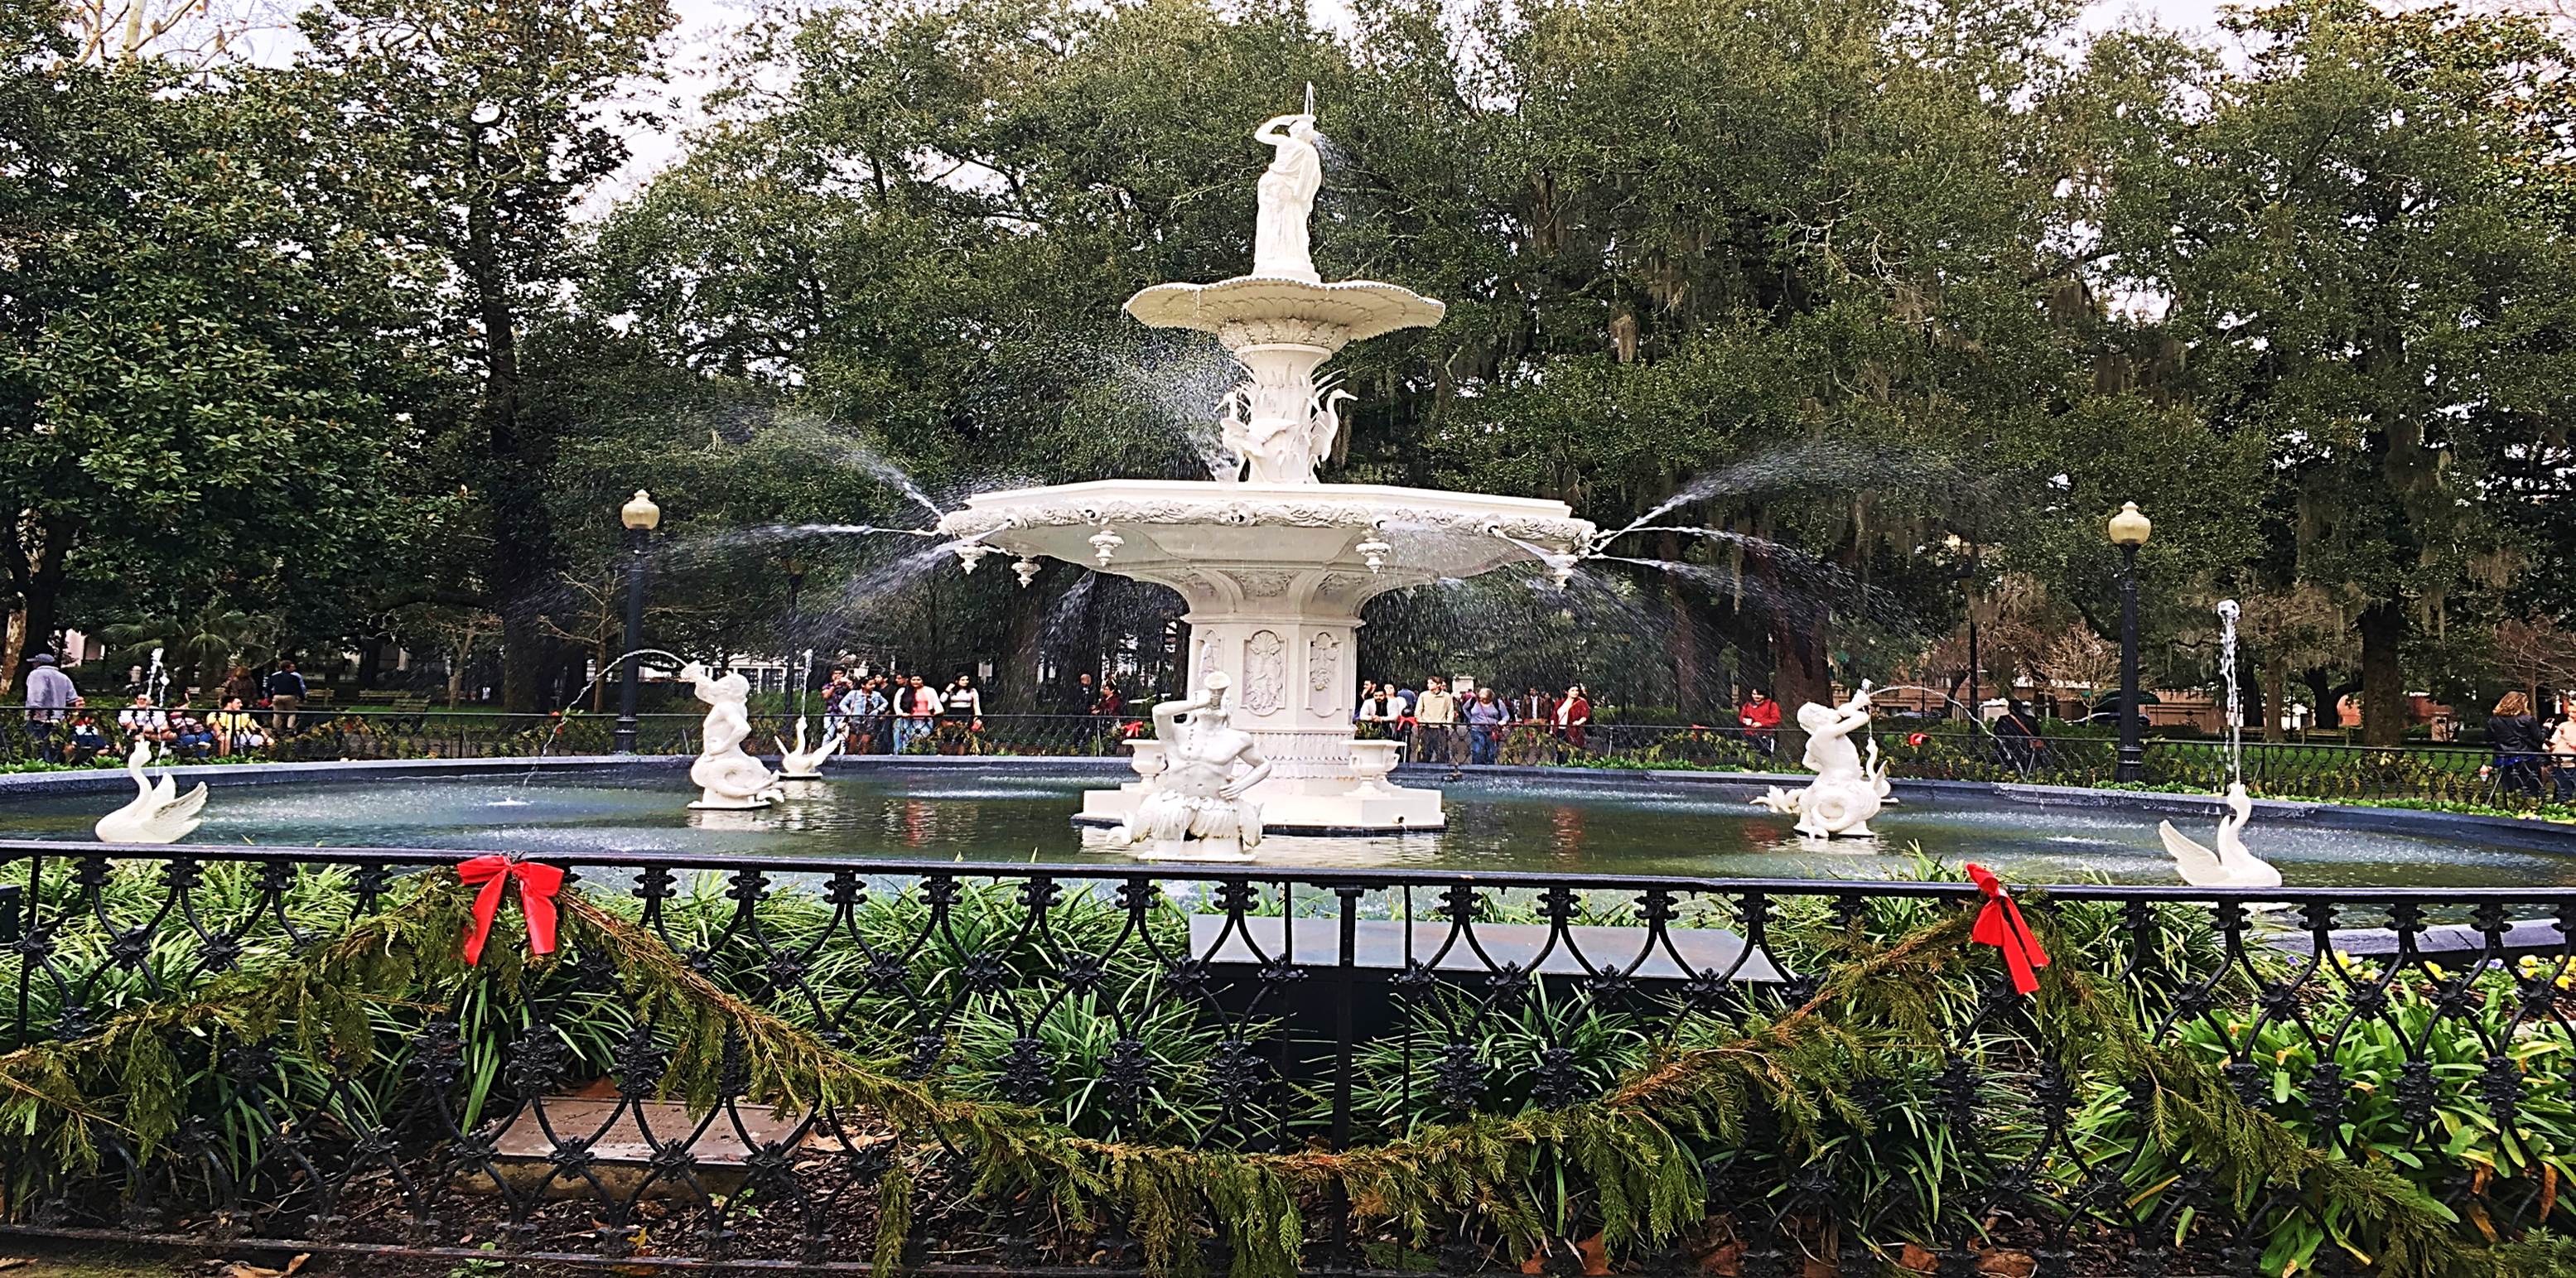 forsythe park fountain